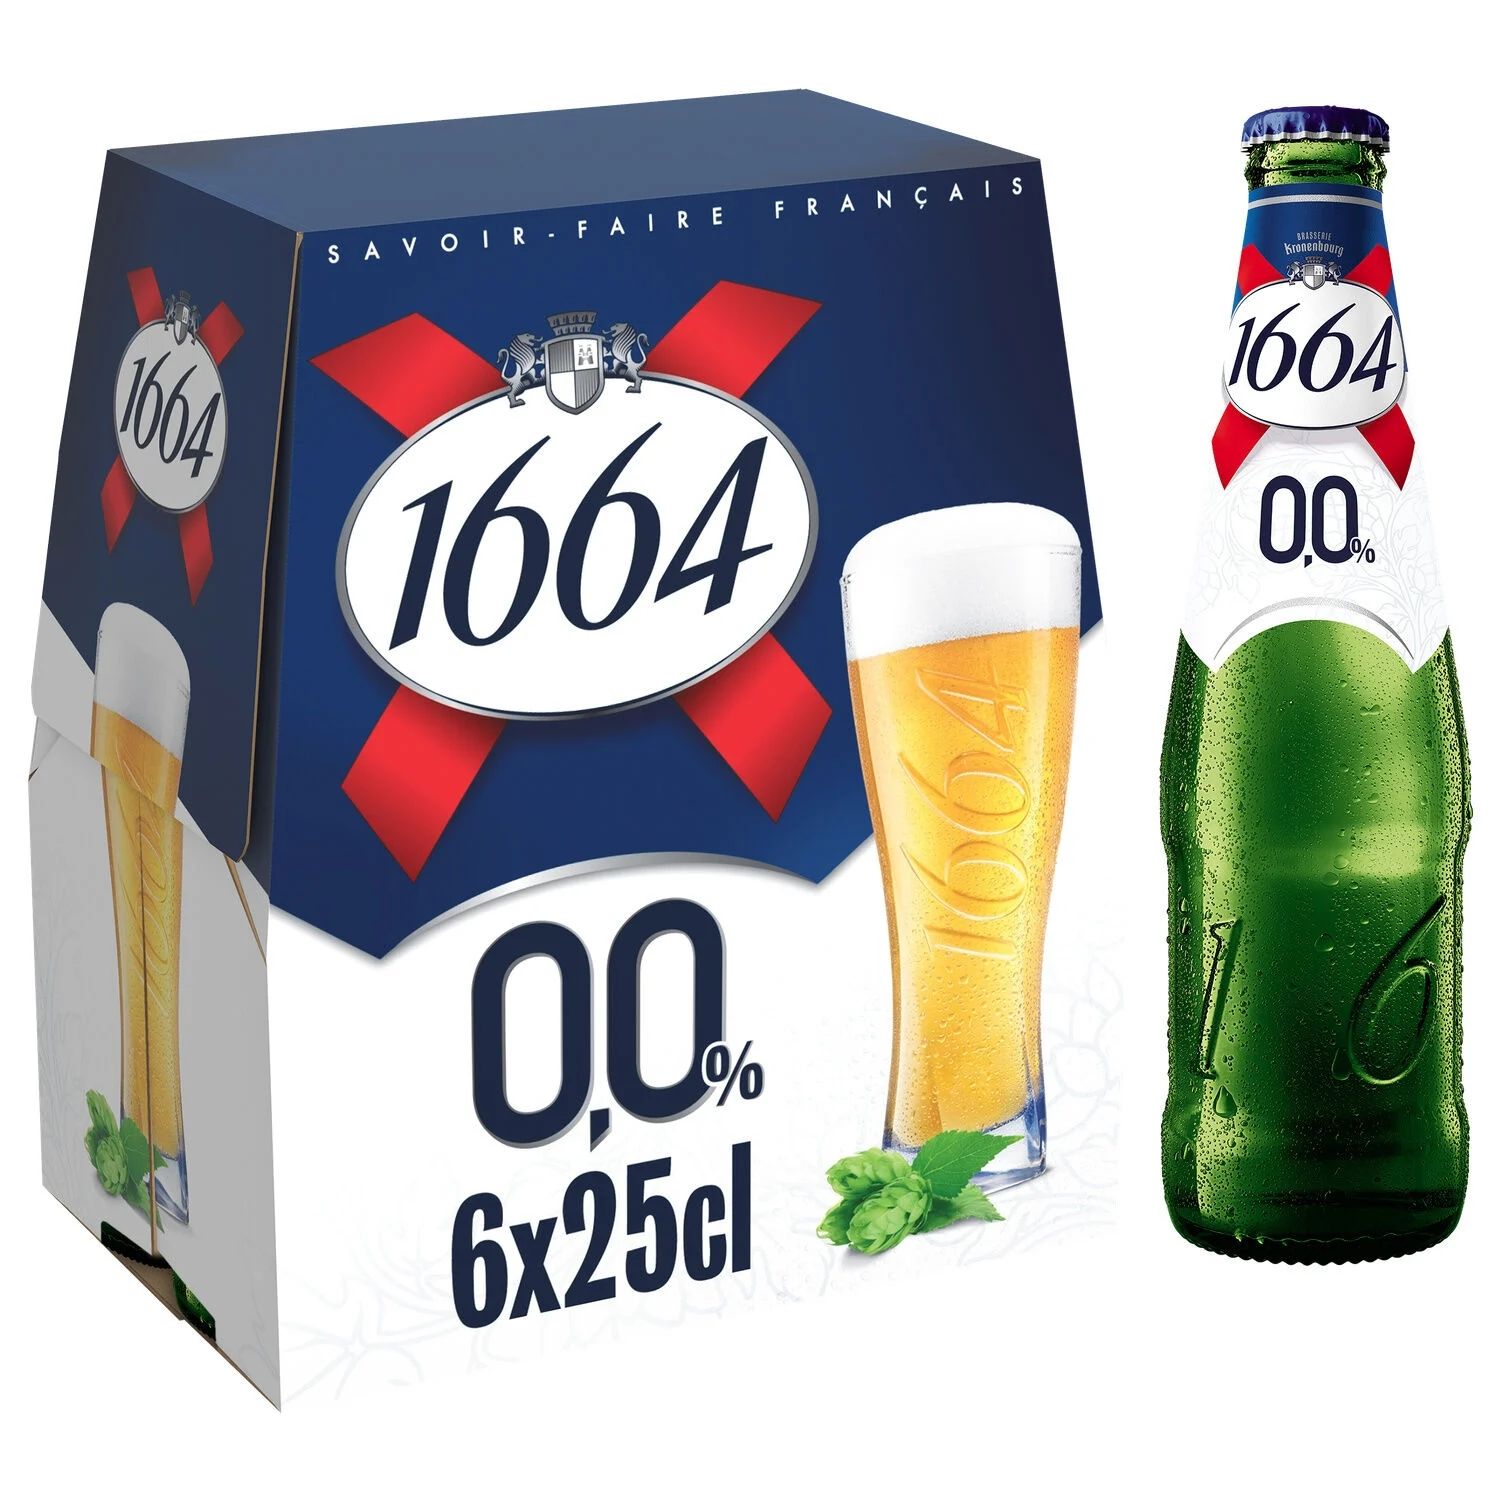 Безалкогольное светлое пиво, 6x25cl - 1664